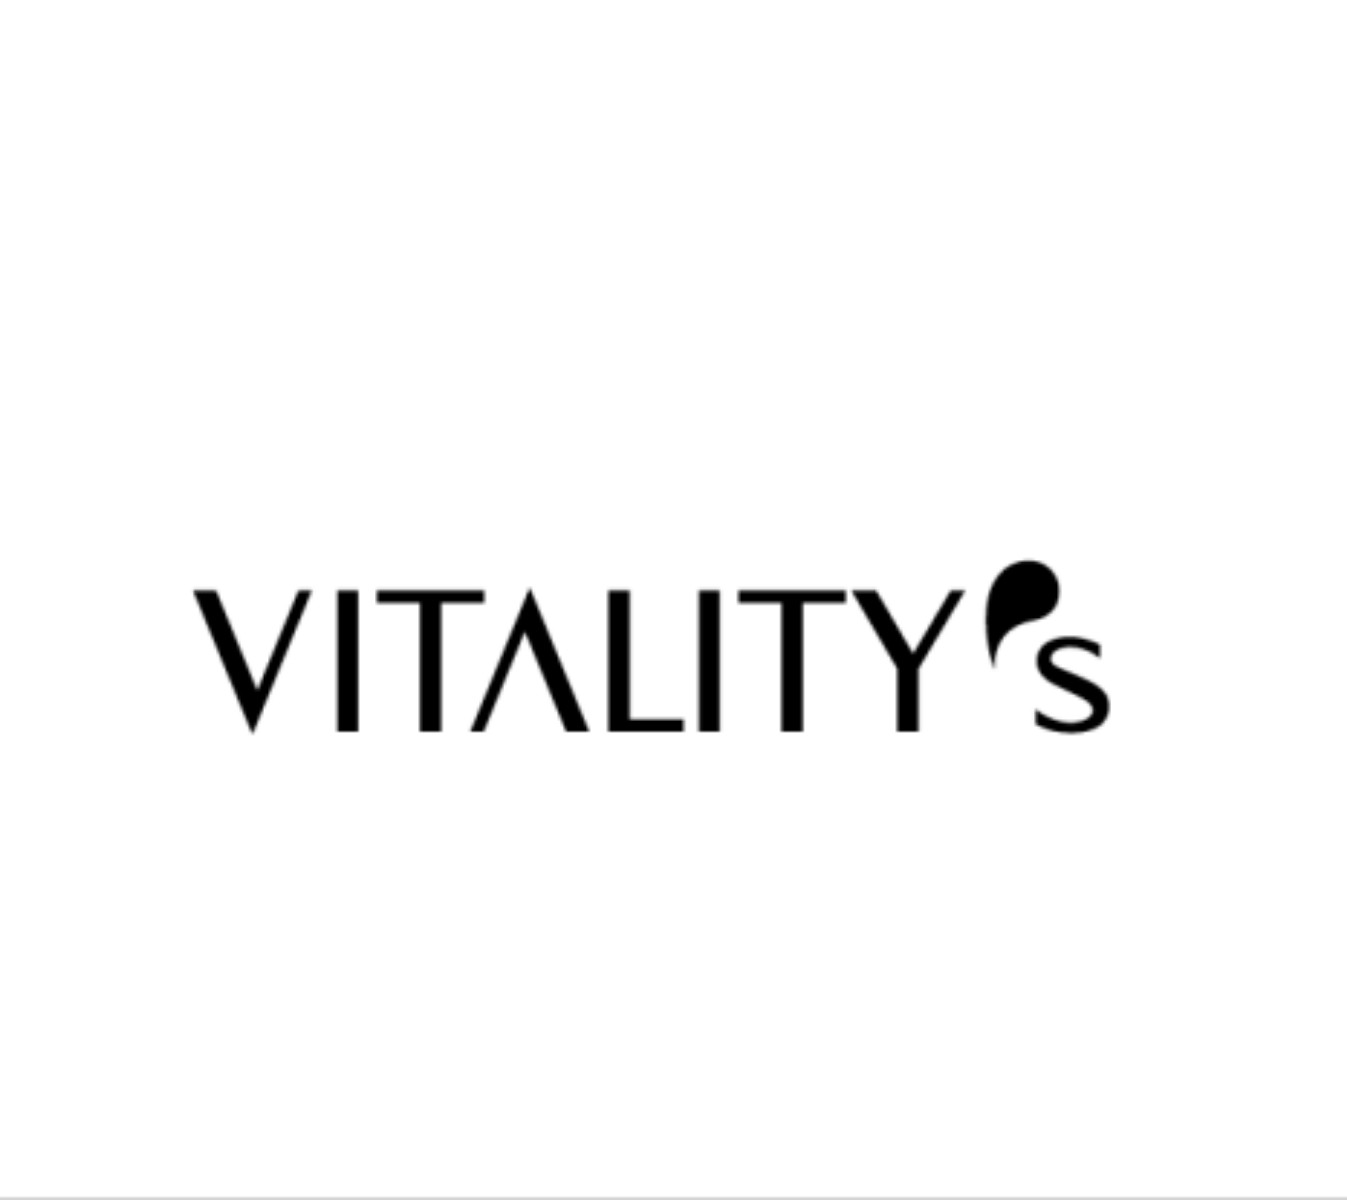 Vitalitys